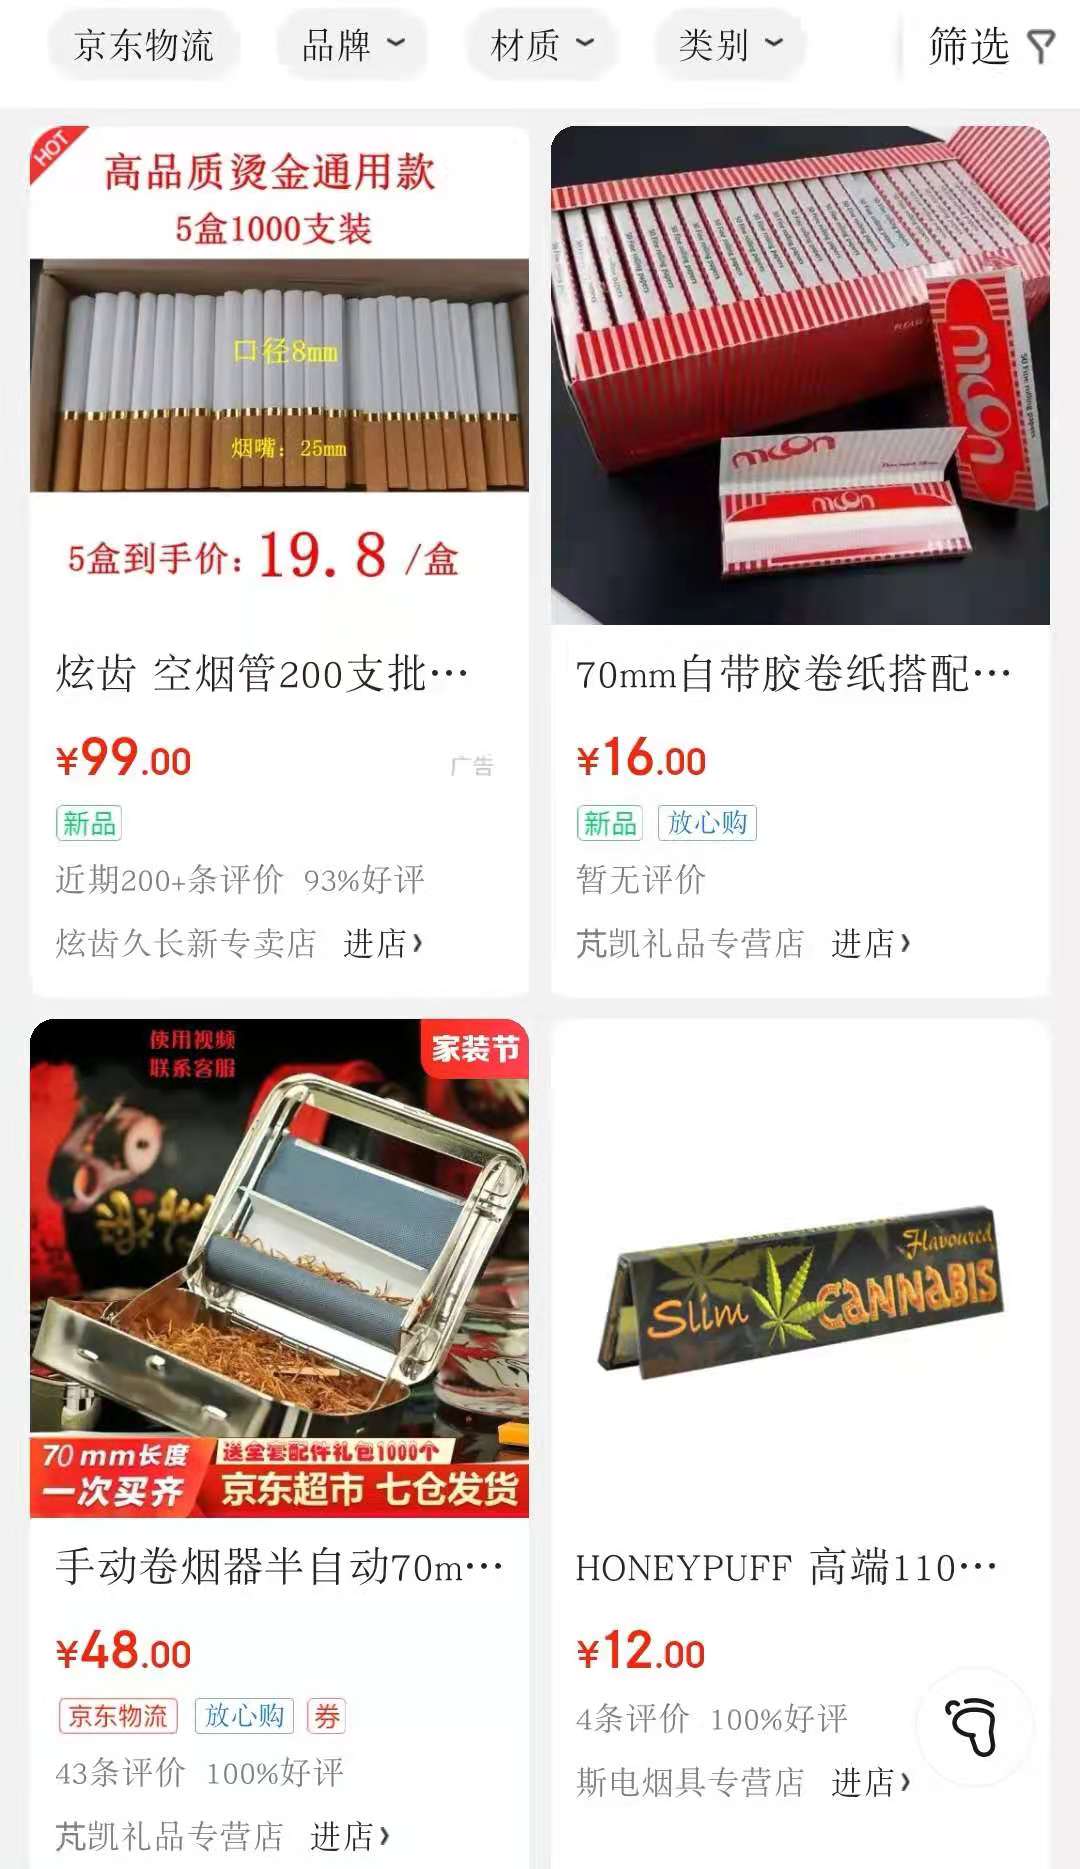 淘宝、拼多多等平台非法出售烟丝、卷烟纸等烟草专卖品